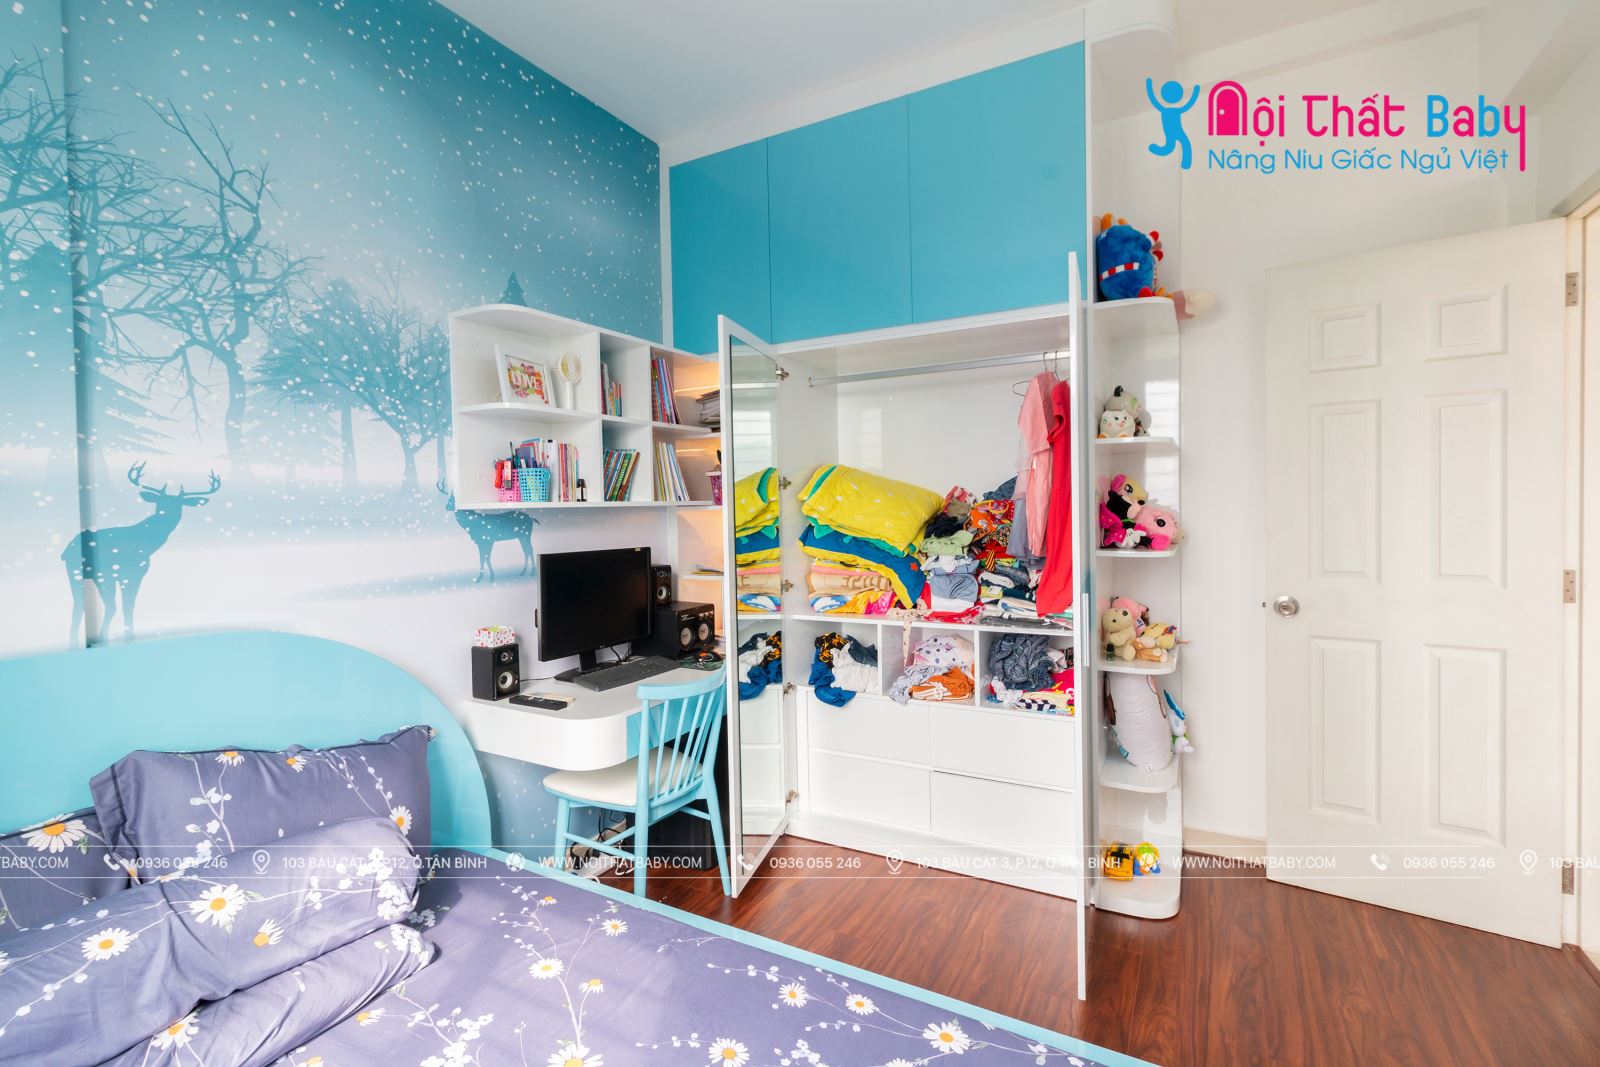 Hình ảnh hoàn thiện thi công nội thất phòng ngủ bé trai nhà anh Sơn - Quận 2